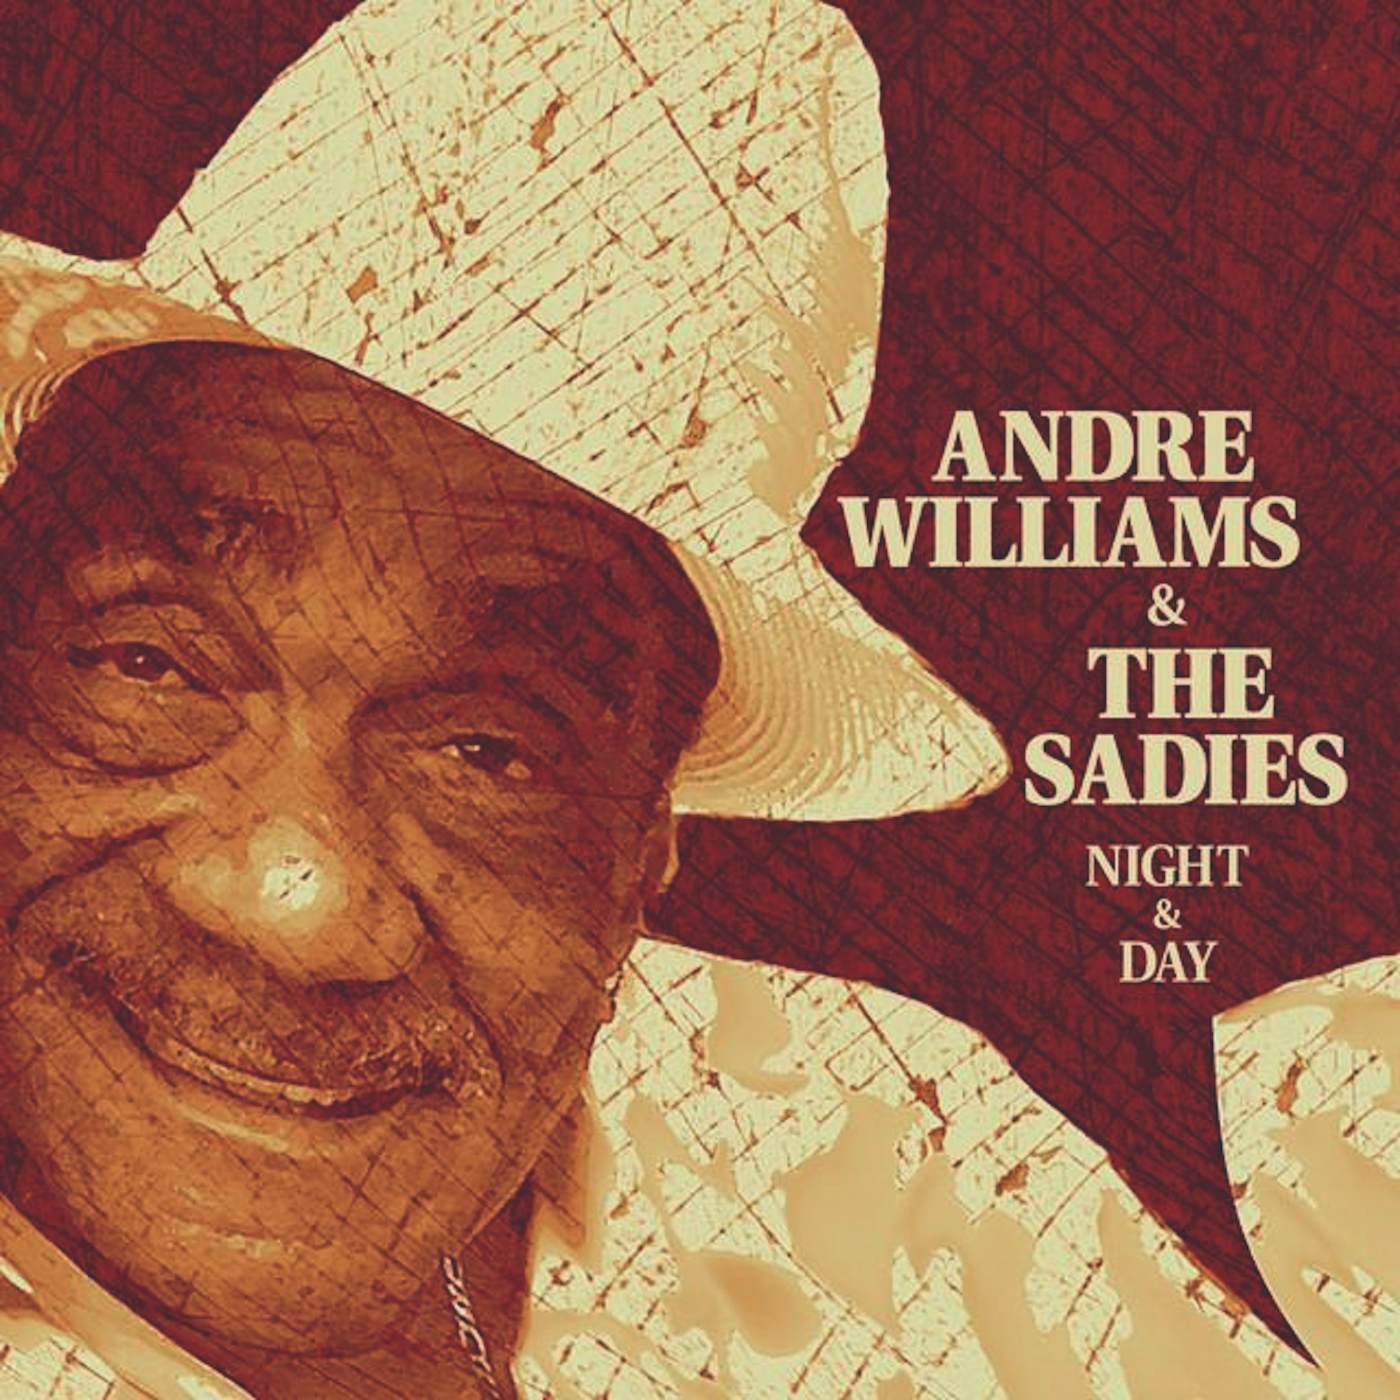 Andre Williams & the Sadies